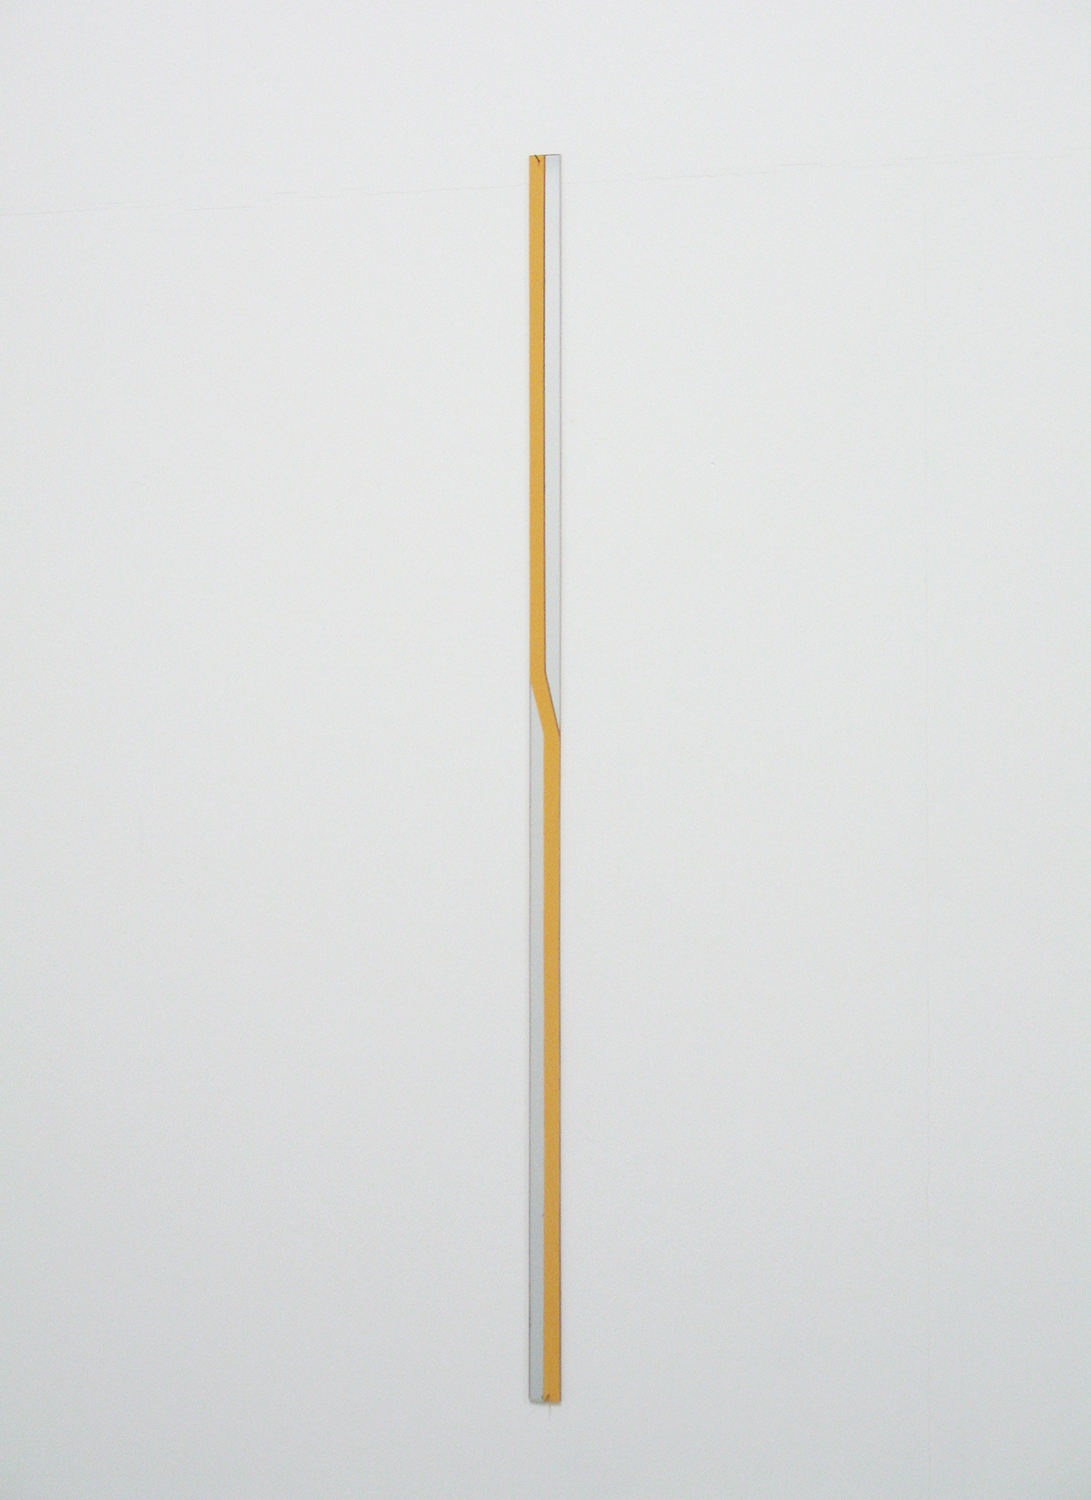 堀尾昭子 Akiko Horio<br>アクリルミラー<br>アクリルミラー, アクリル　73.5 x 2 cm<br>2013